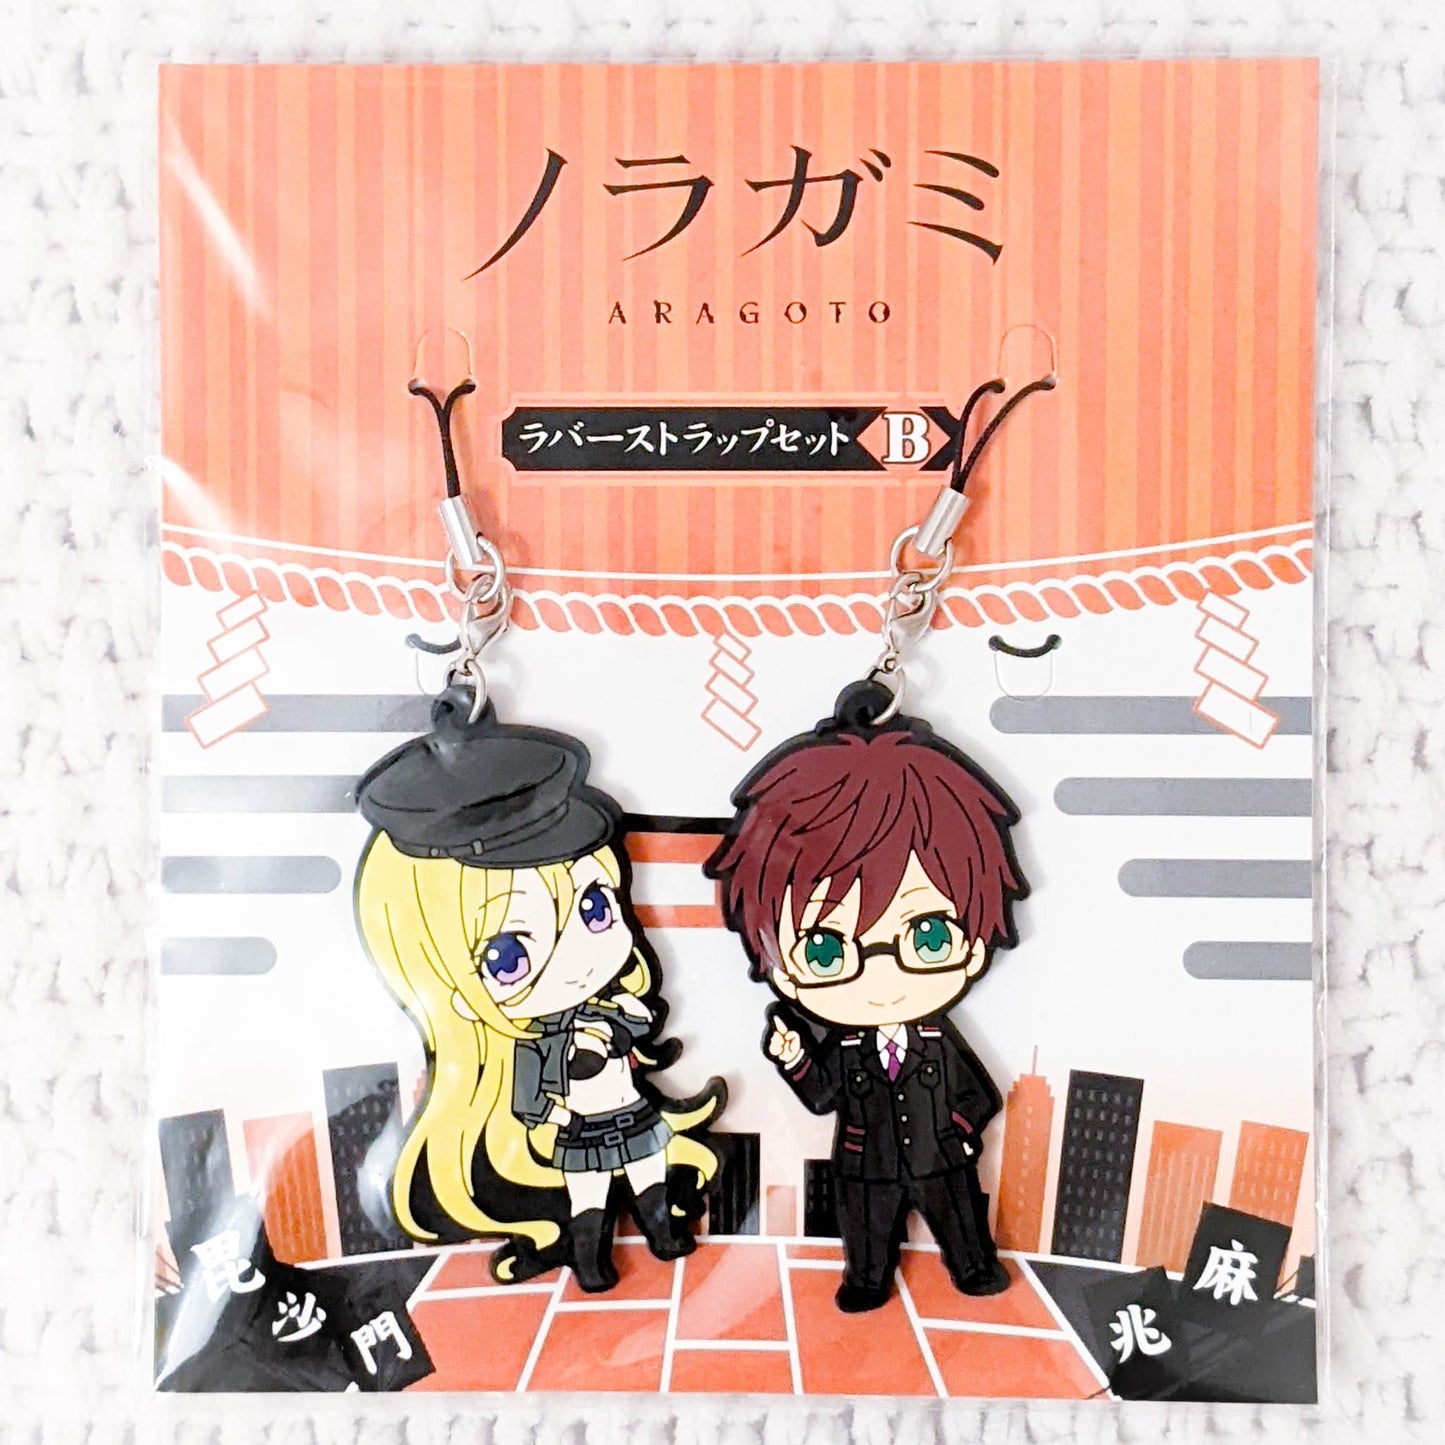 Bishamon & Kazuma - Noragami Aragato Anime Chibi Rubber Strap Set